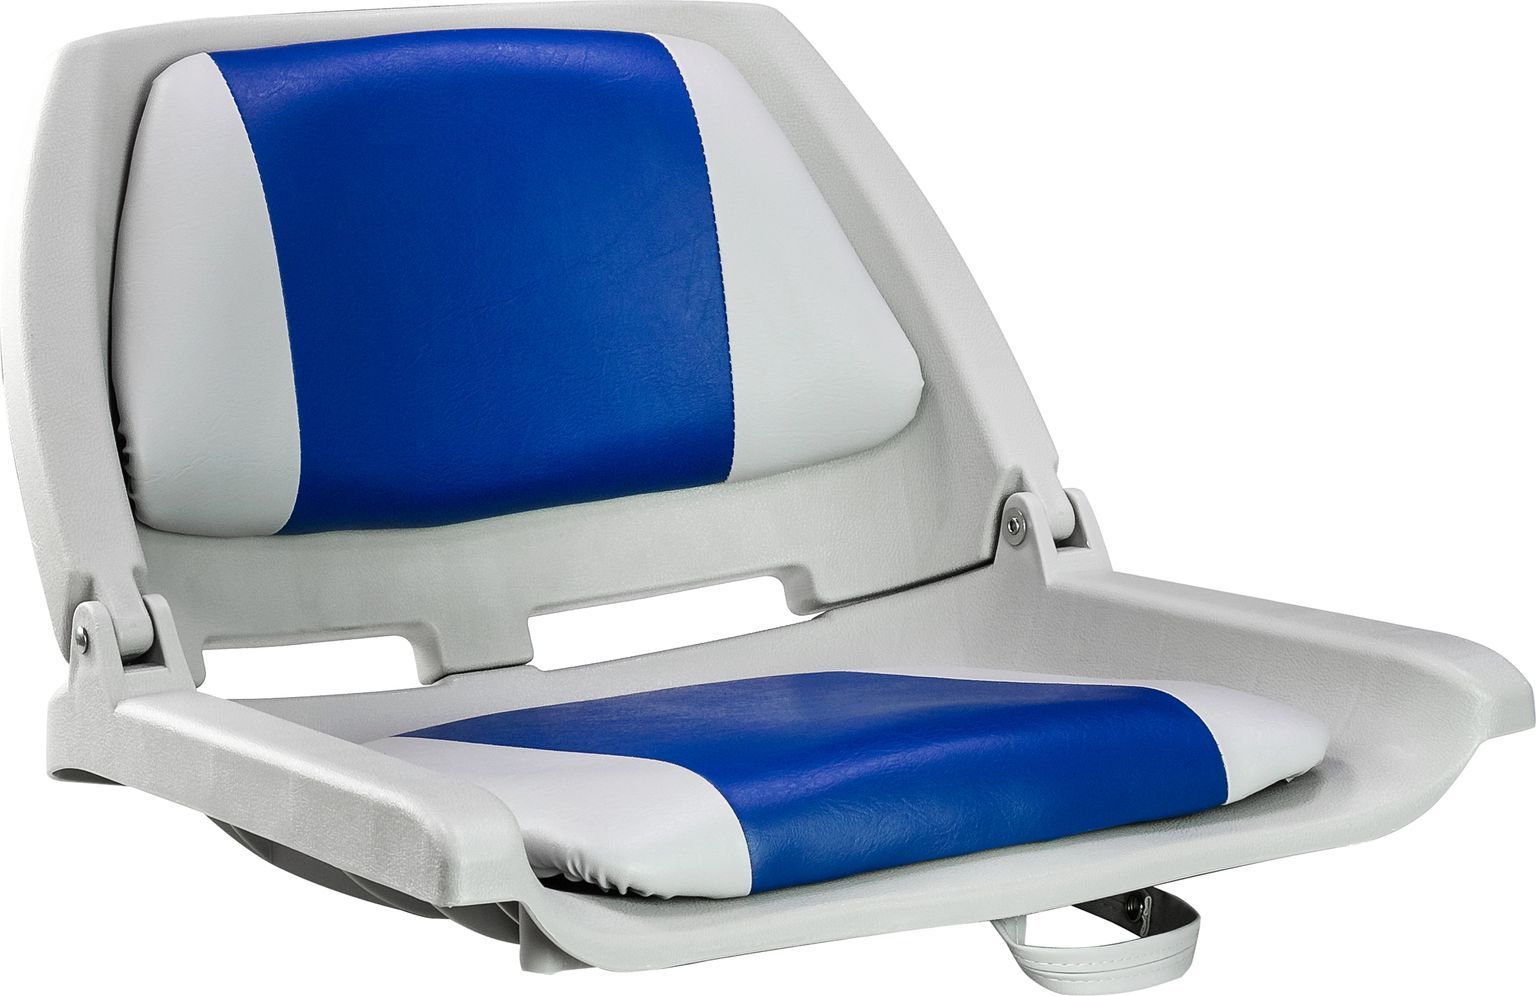 Кресло пластмассовое складное с подложкой Molded Fold-Down Boat Seat,серый/голубой 75109GB кресло пластмассовое складное с подложкой molded fold down boat seat серый голубой 75109gb